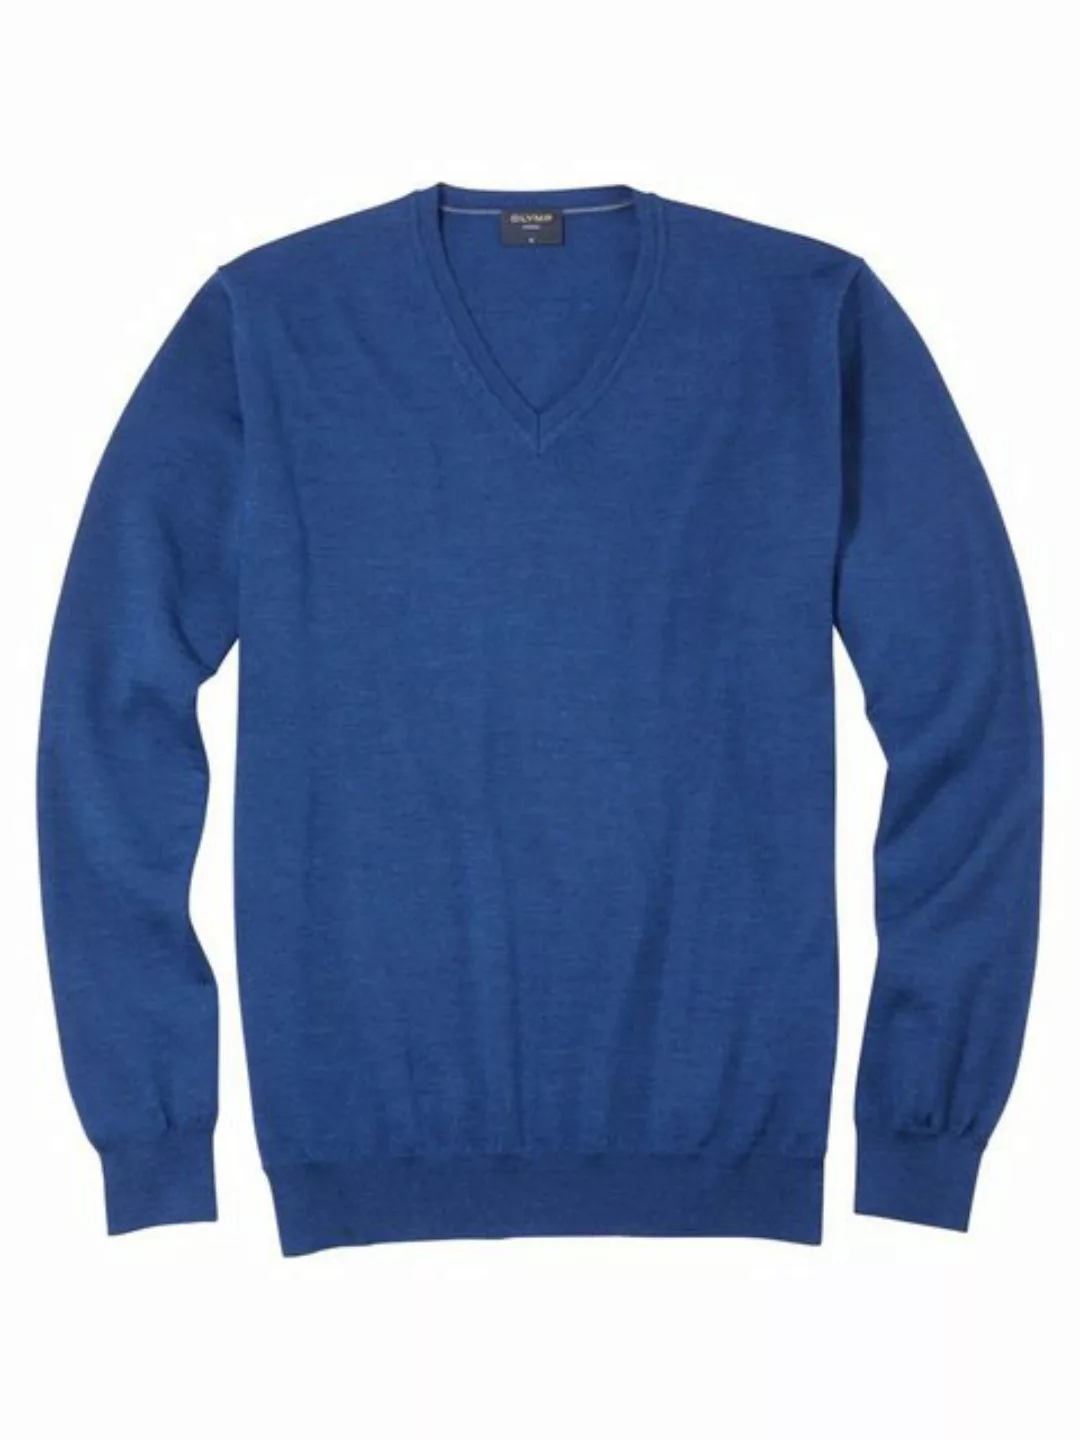 OLYMP Strickpullover 0150/10 Pullover günstig online kaufen